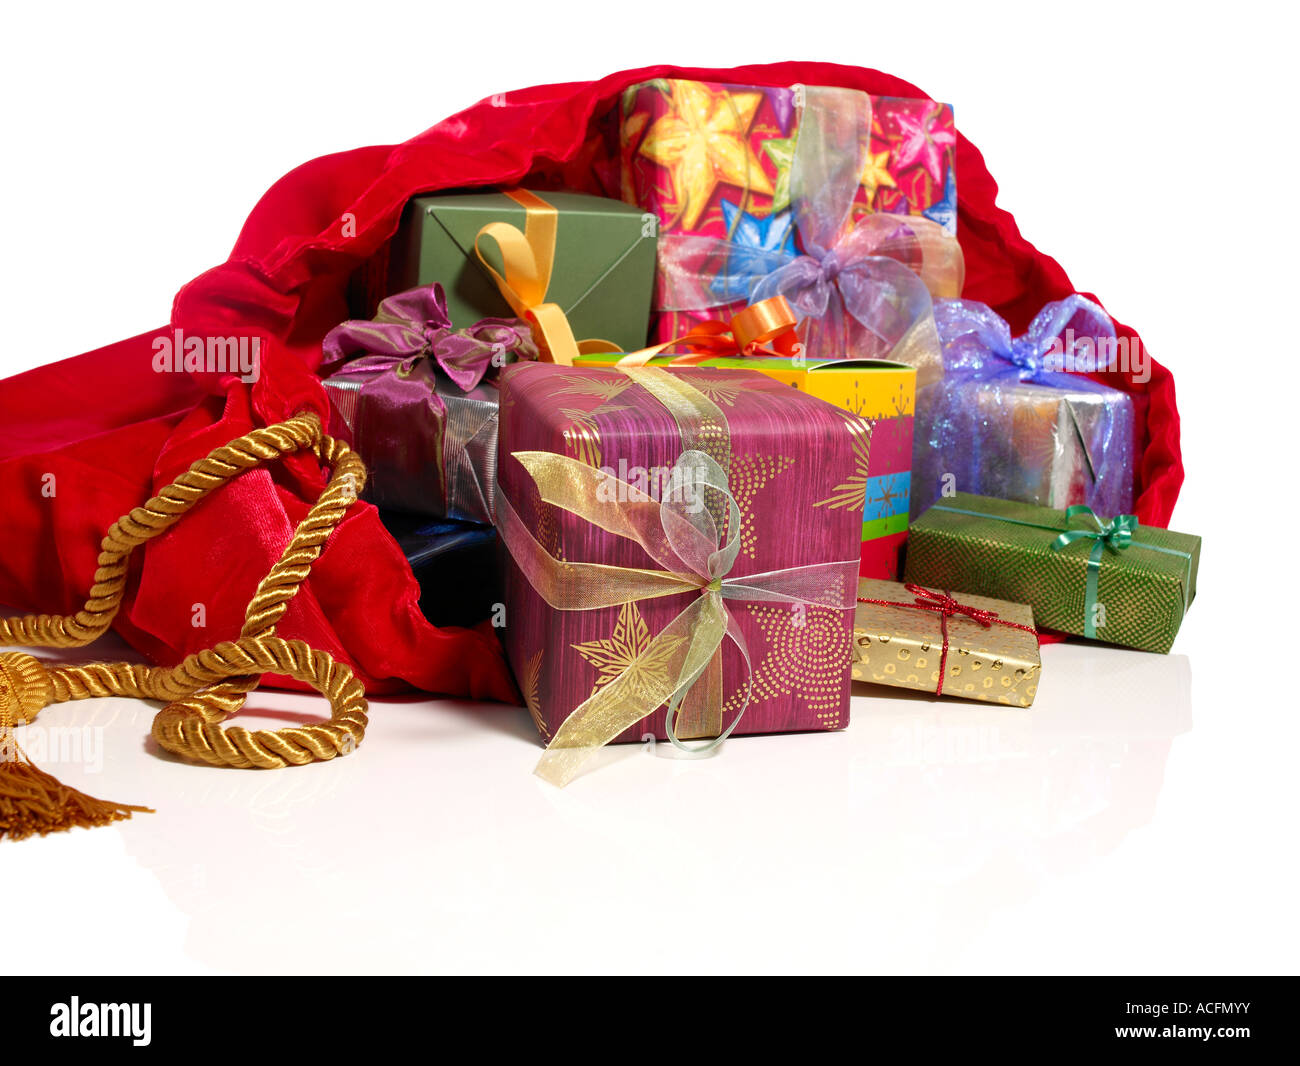 Santa's Bag and Gifts Stock Photo